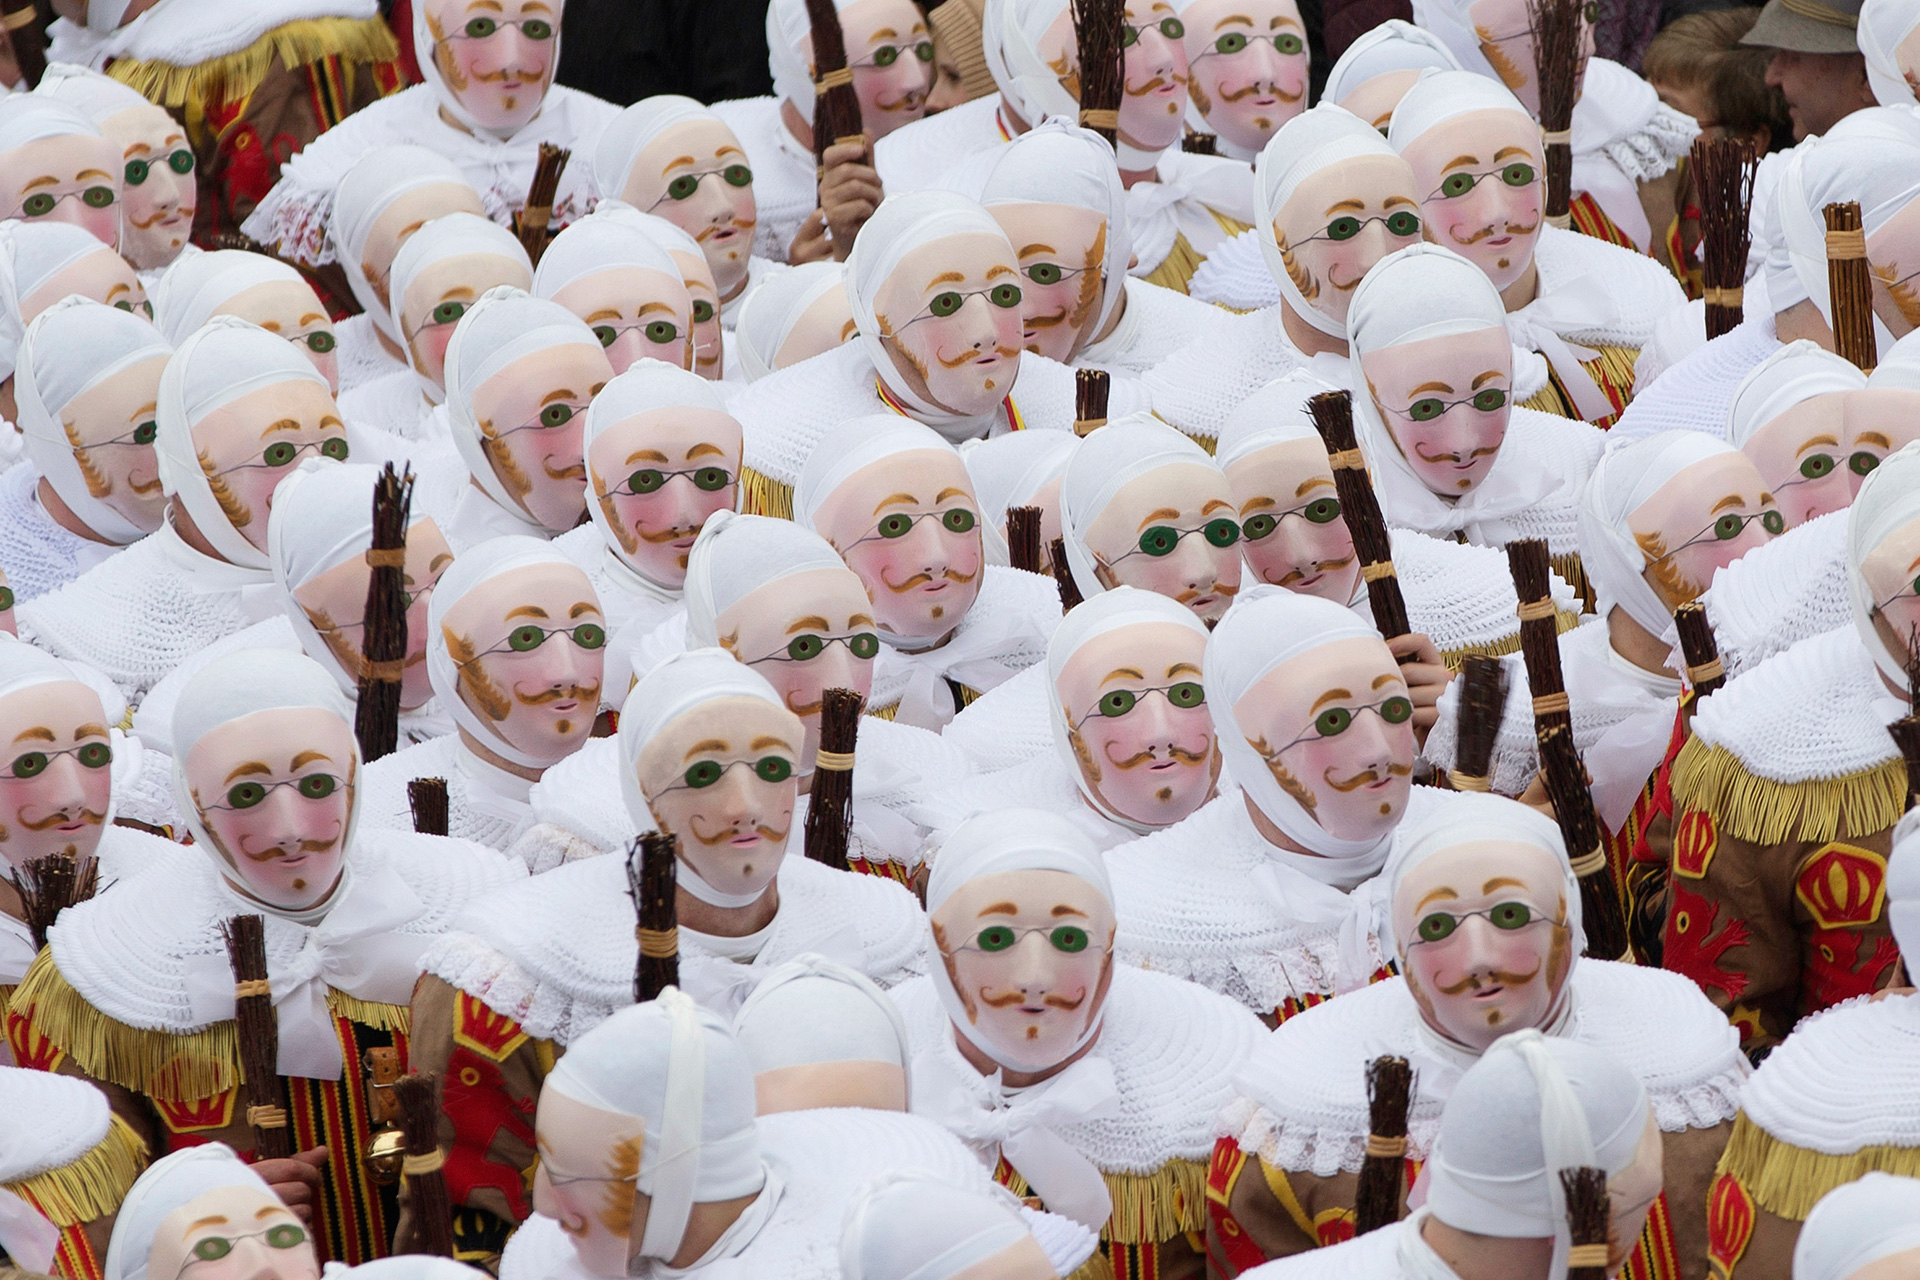 100.000 personas visitan cada año el Carnaval de Binche. (Foto: Yves Herman / Reuters)